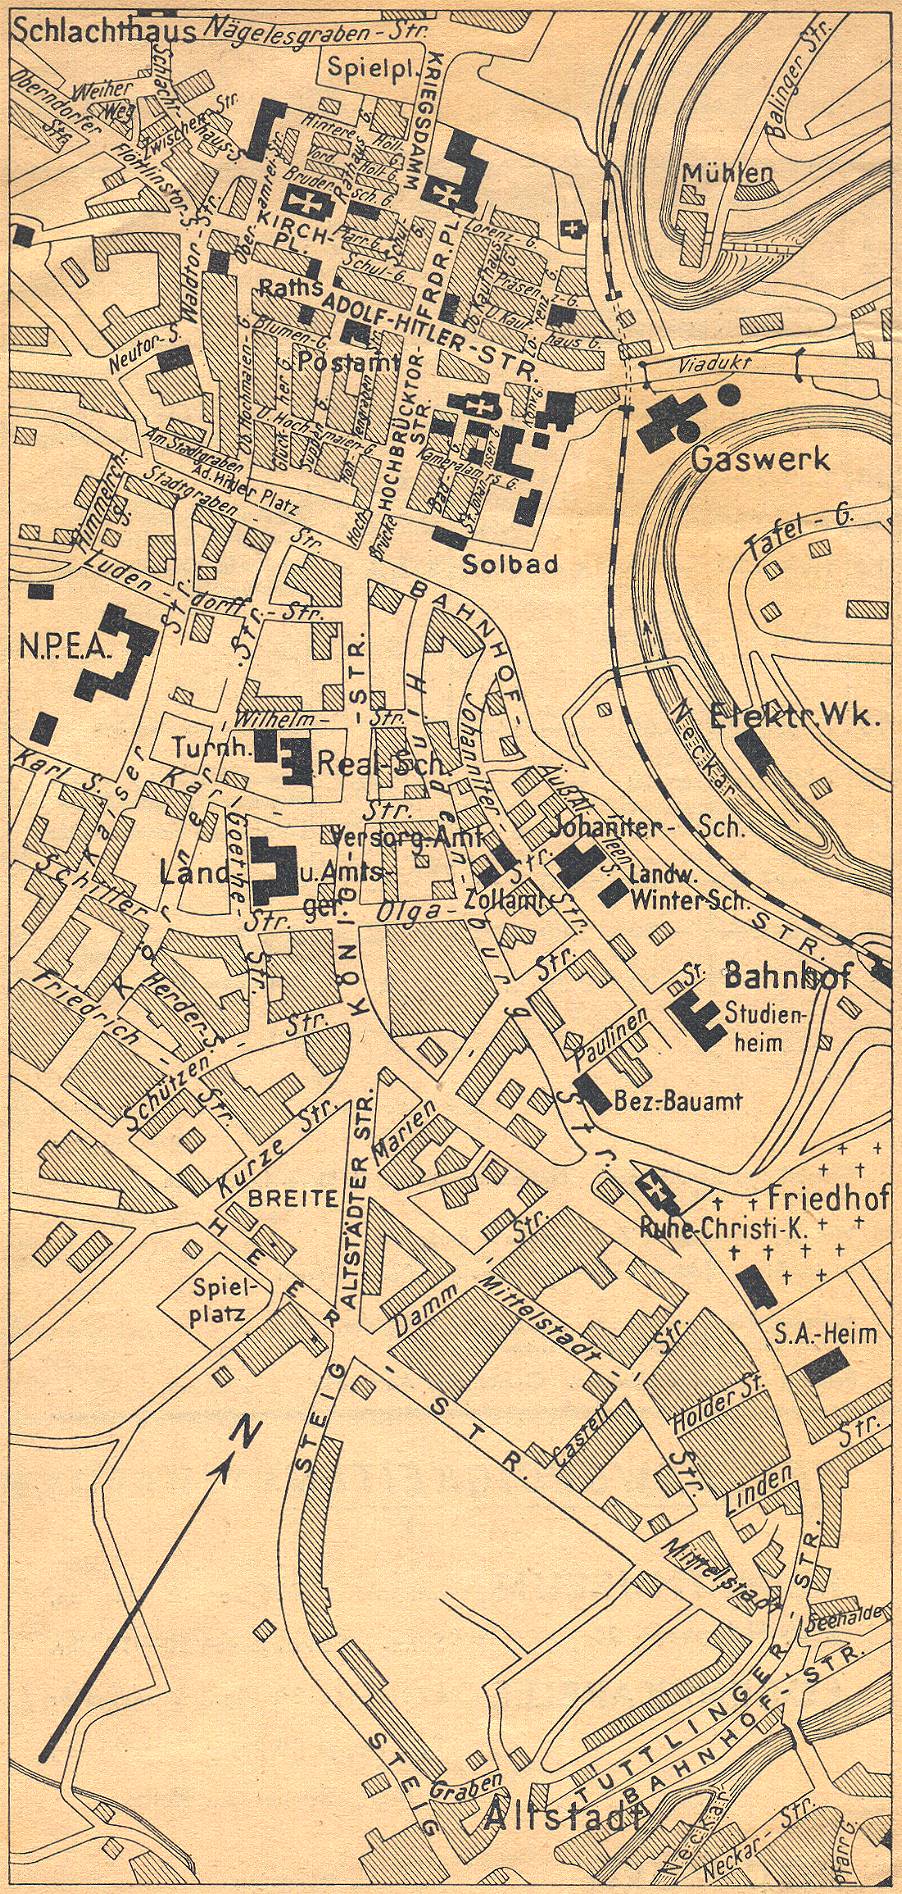 Themen 2002 Maerz2002 Stadtfuehrer 1938 Stadtplan Stadtplan 1938 01.jpg